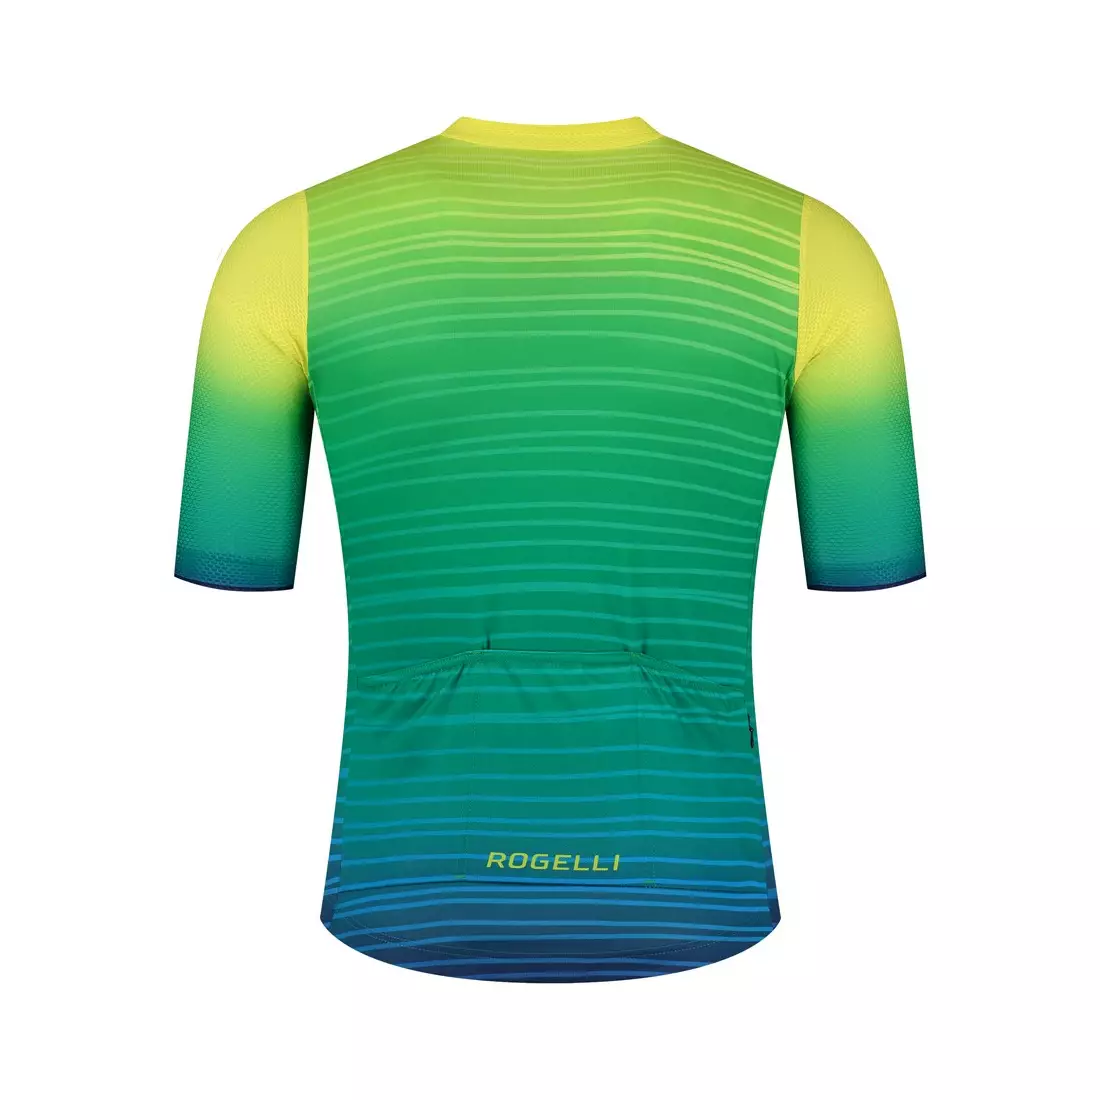 ROGELLI SURF pánské cyklistické tričko, zelená žlutá